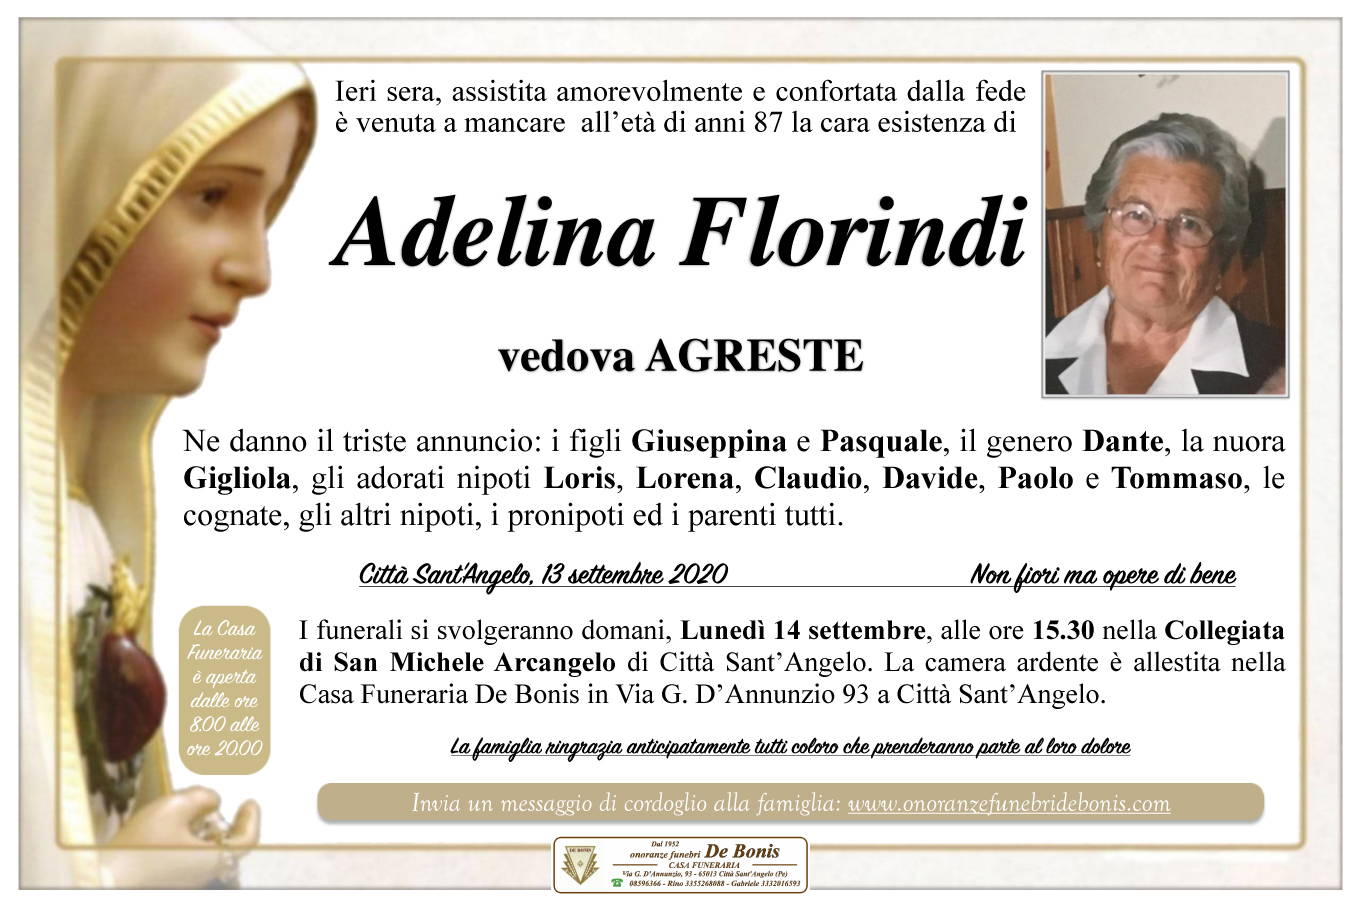 Adelina Florindi